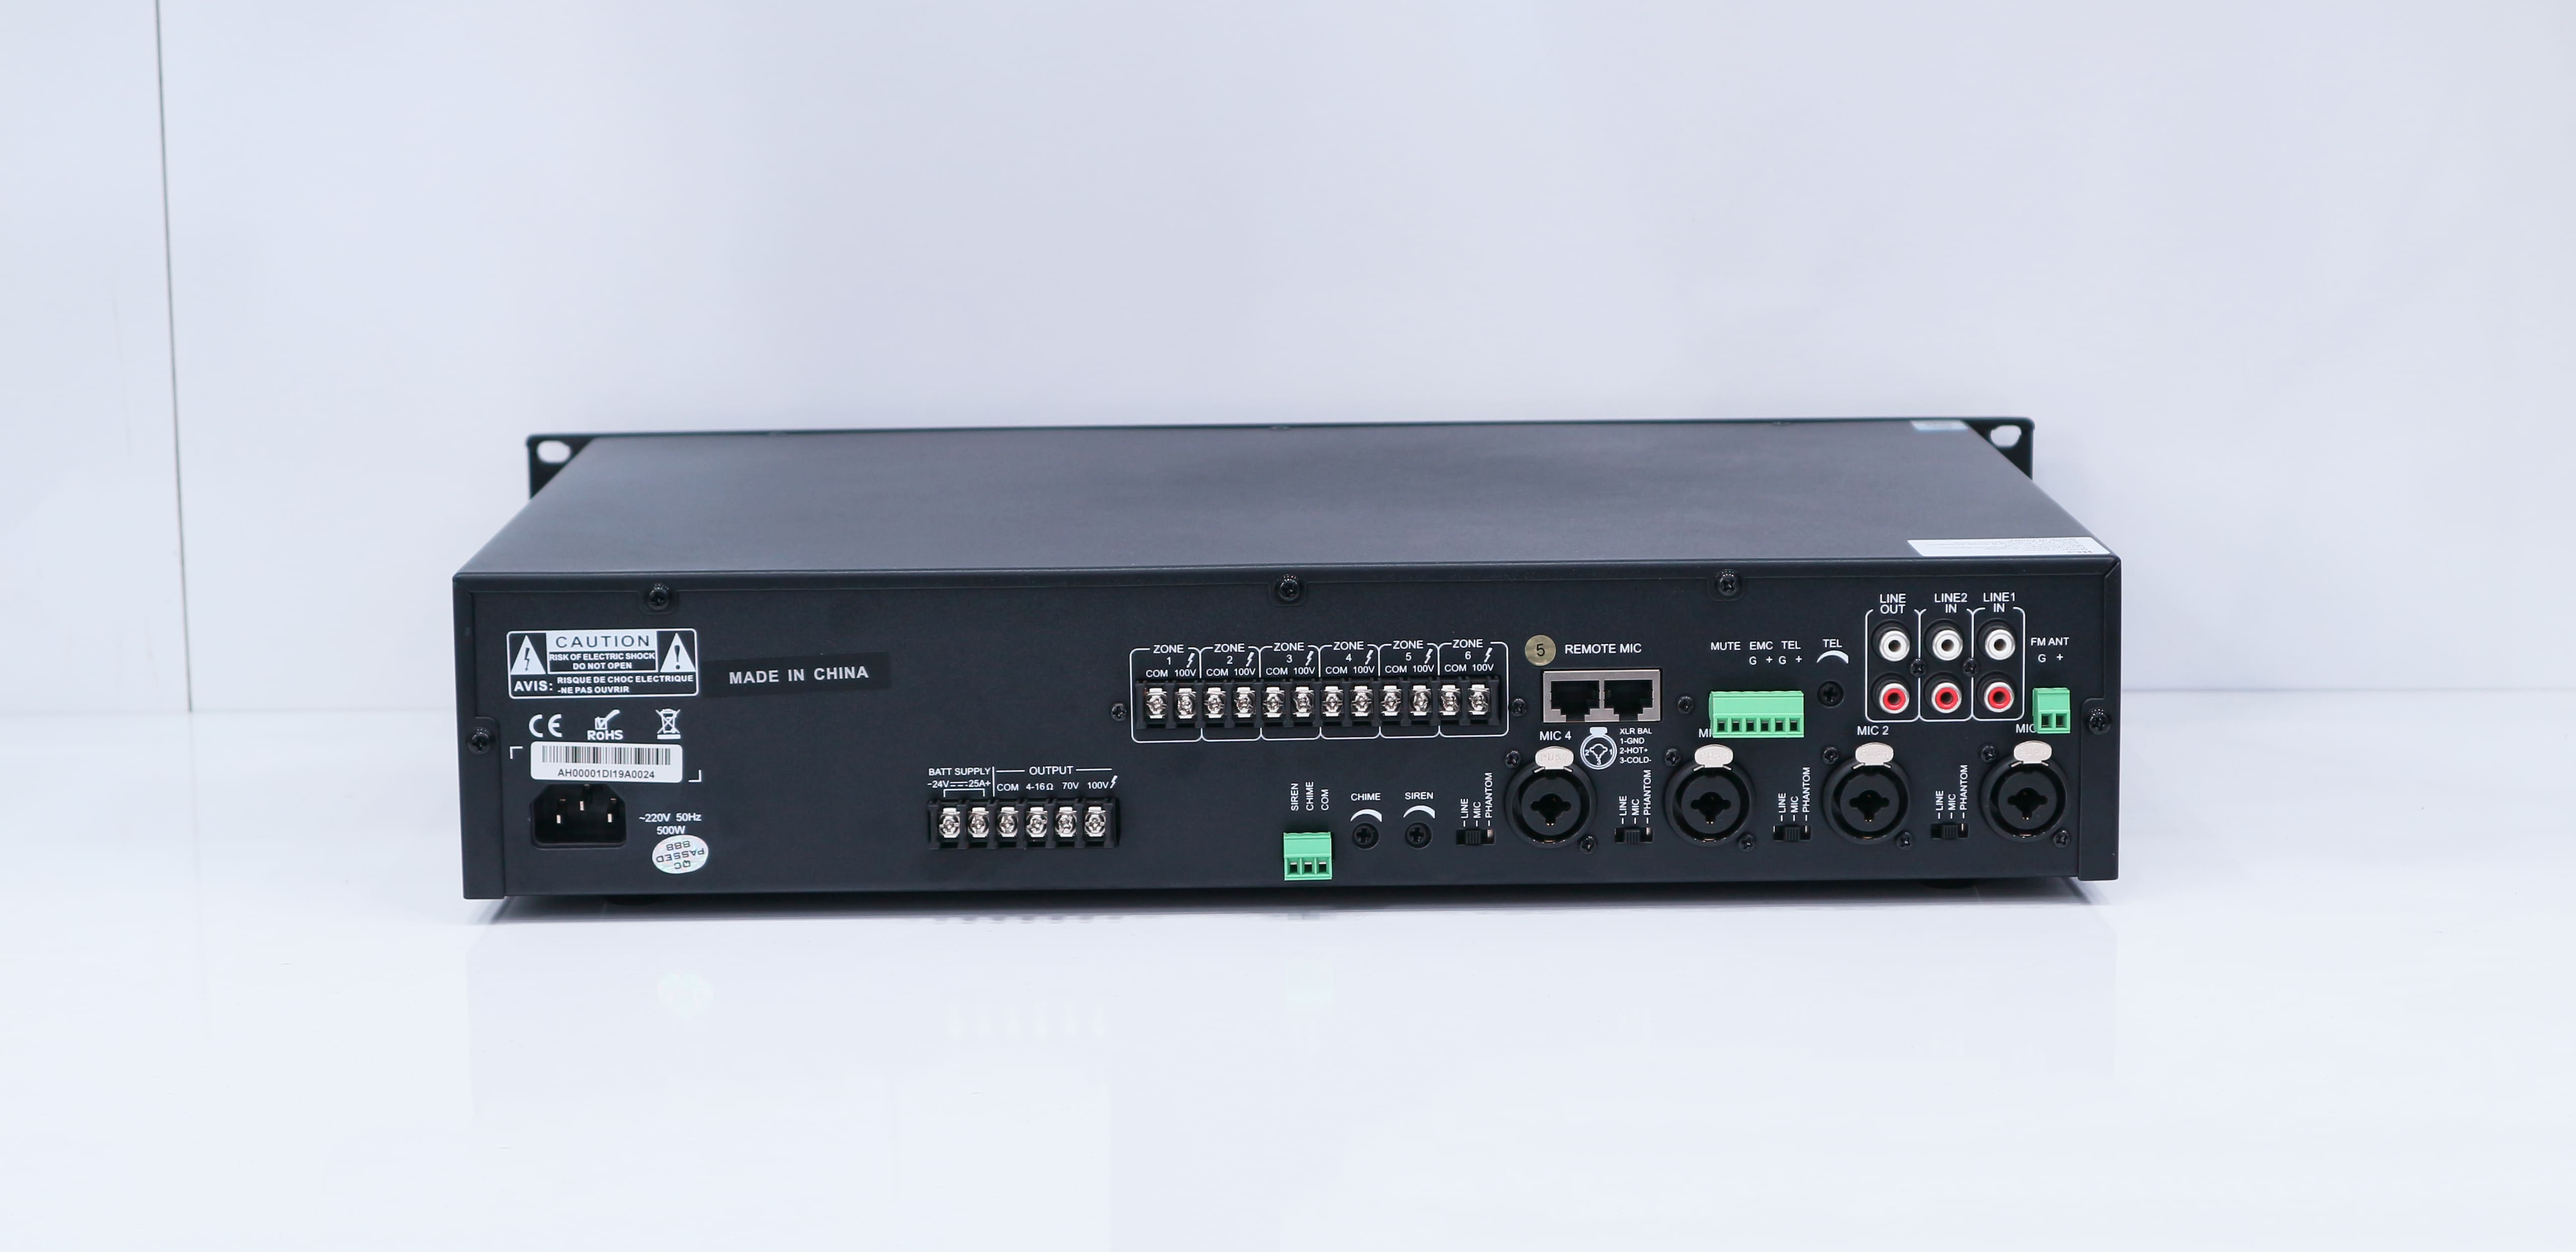 Mặt sau amply ITC TZ-6500 được thiết kế các cổng kết nối tiêu chuẩn, dễ dàng kết nối với các thiết bị khác